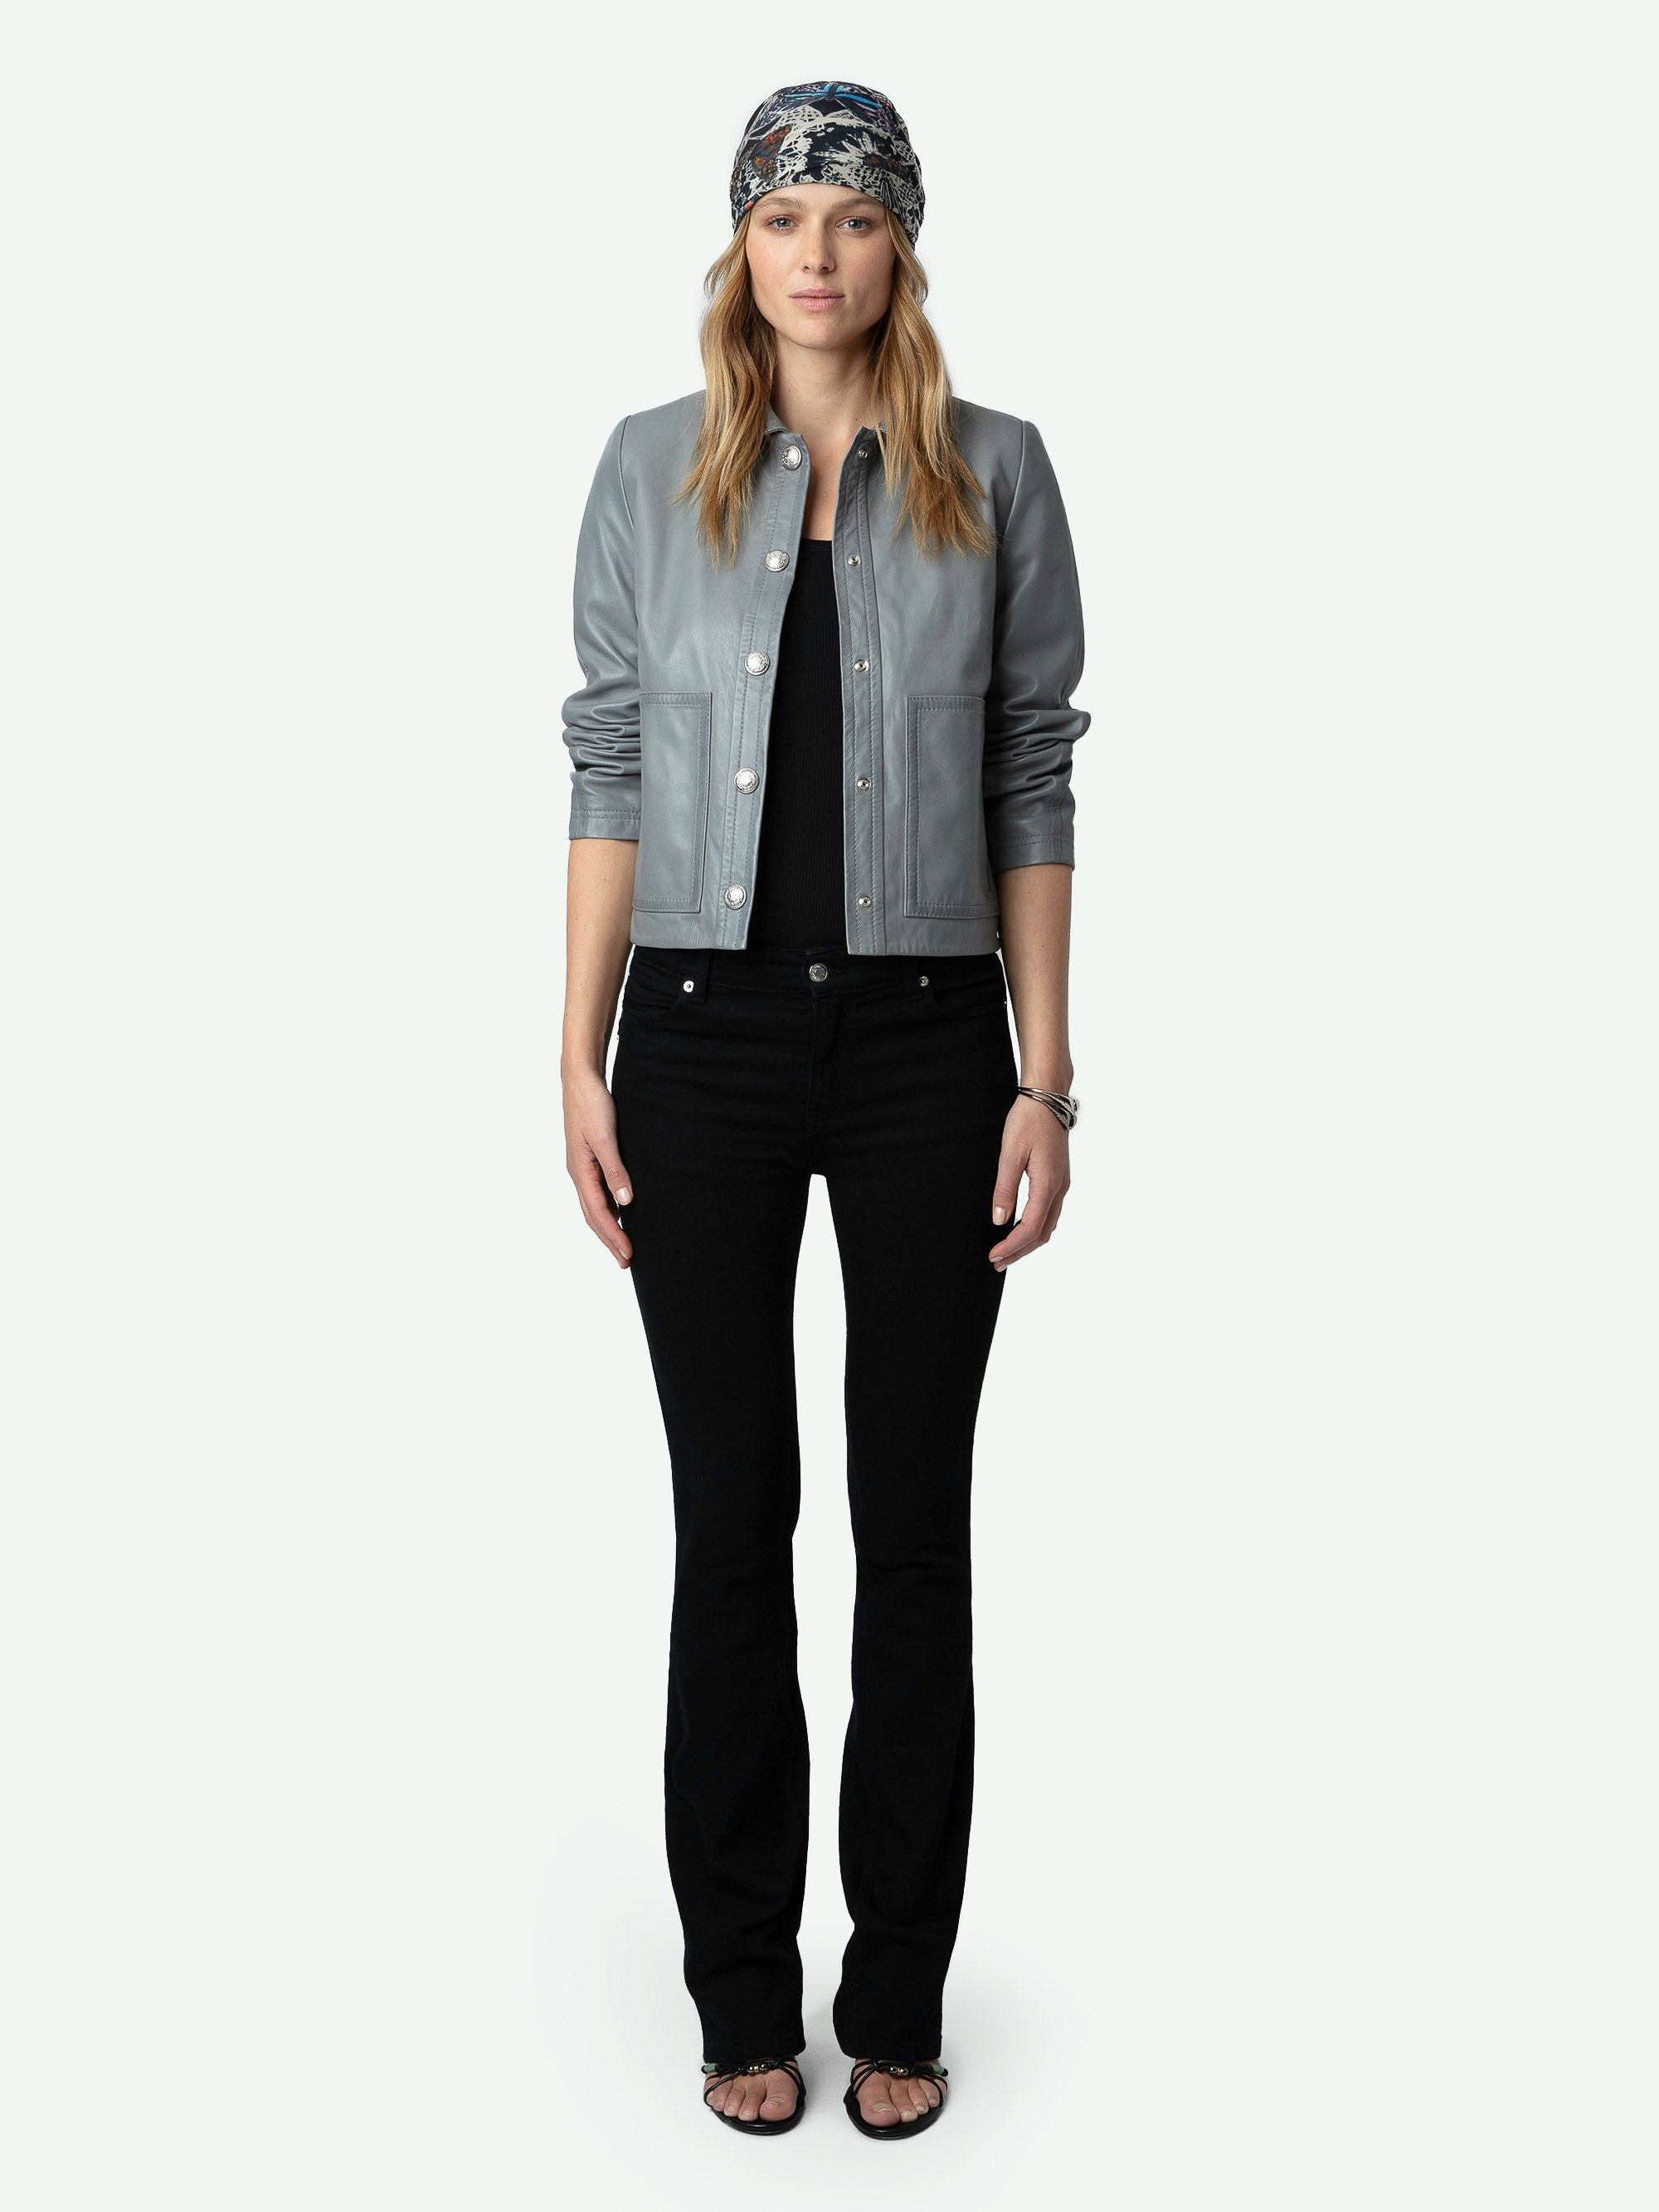 Veste Litchi Cuir - Veste courte en cuir lisse gris à manches longues, fermeture boutonnée, poches et découpes.